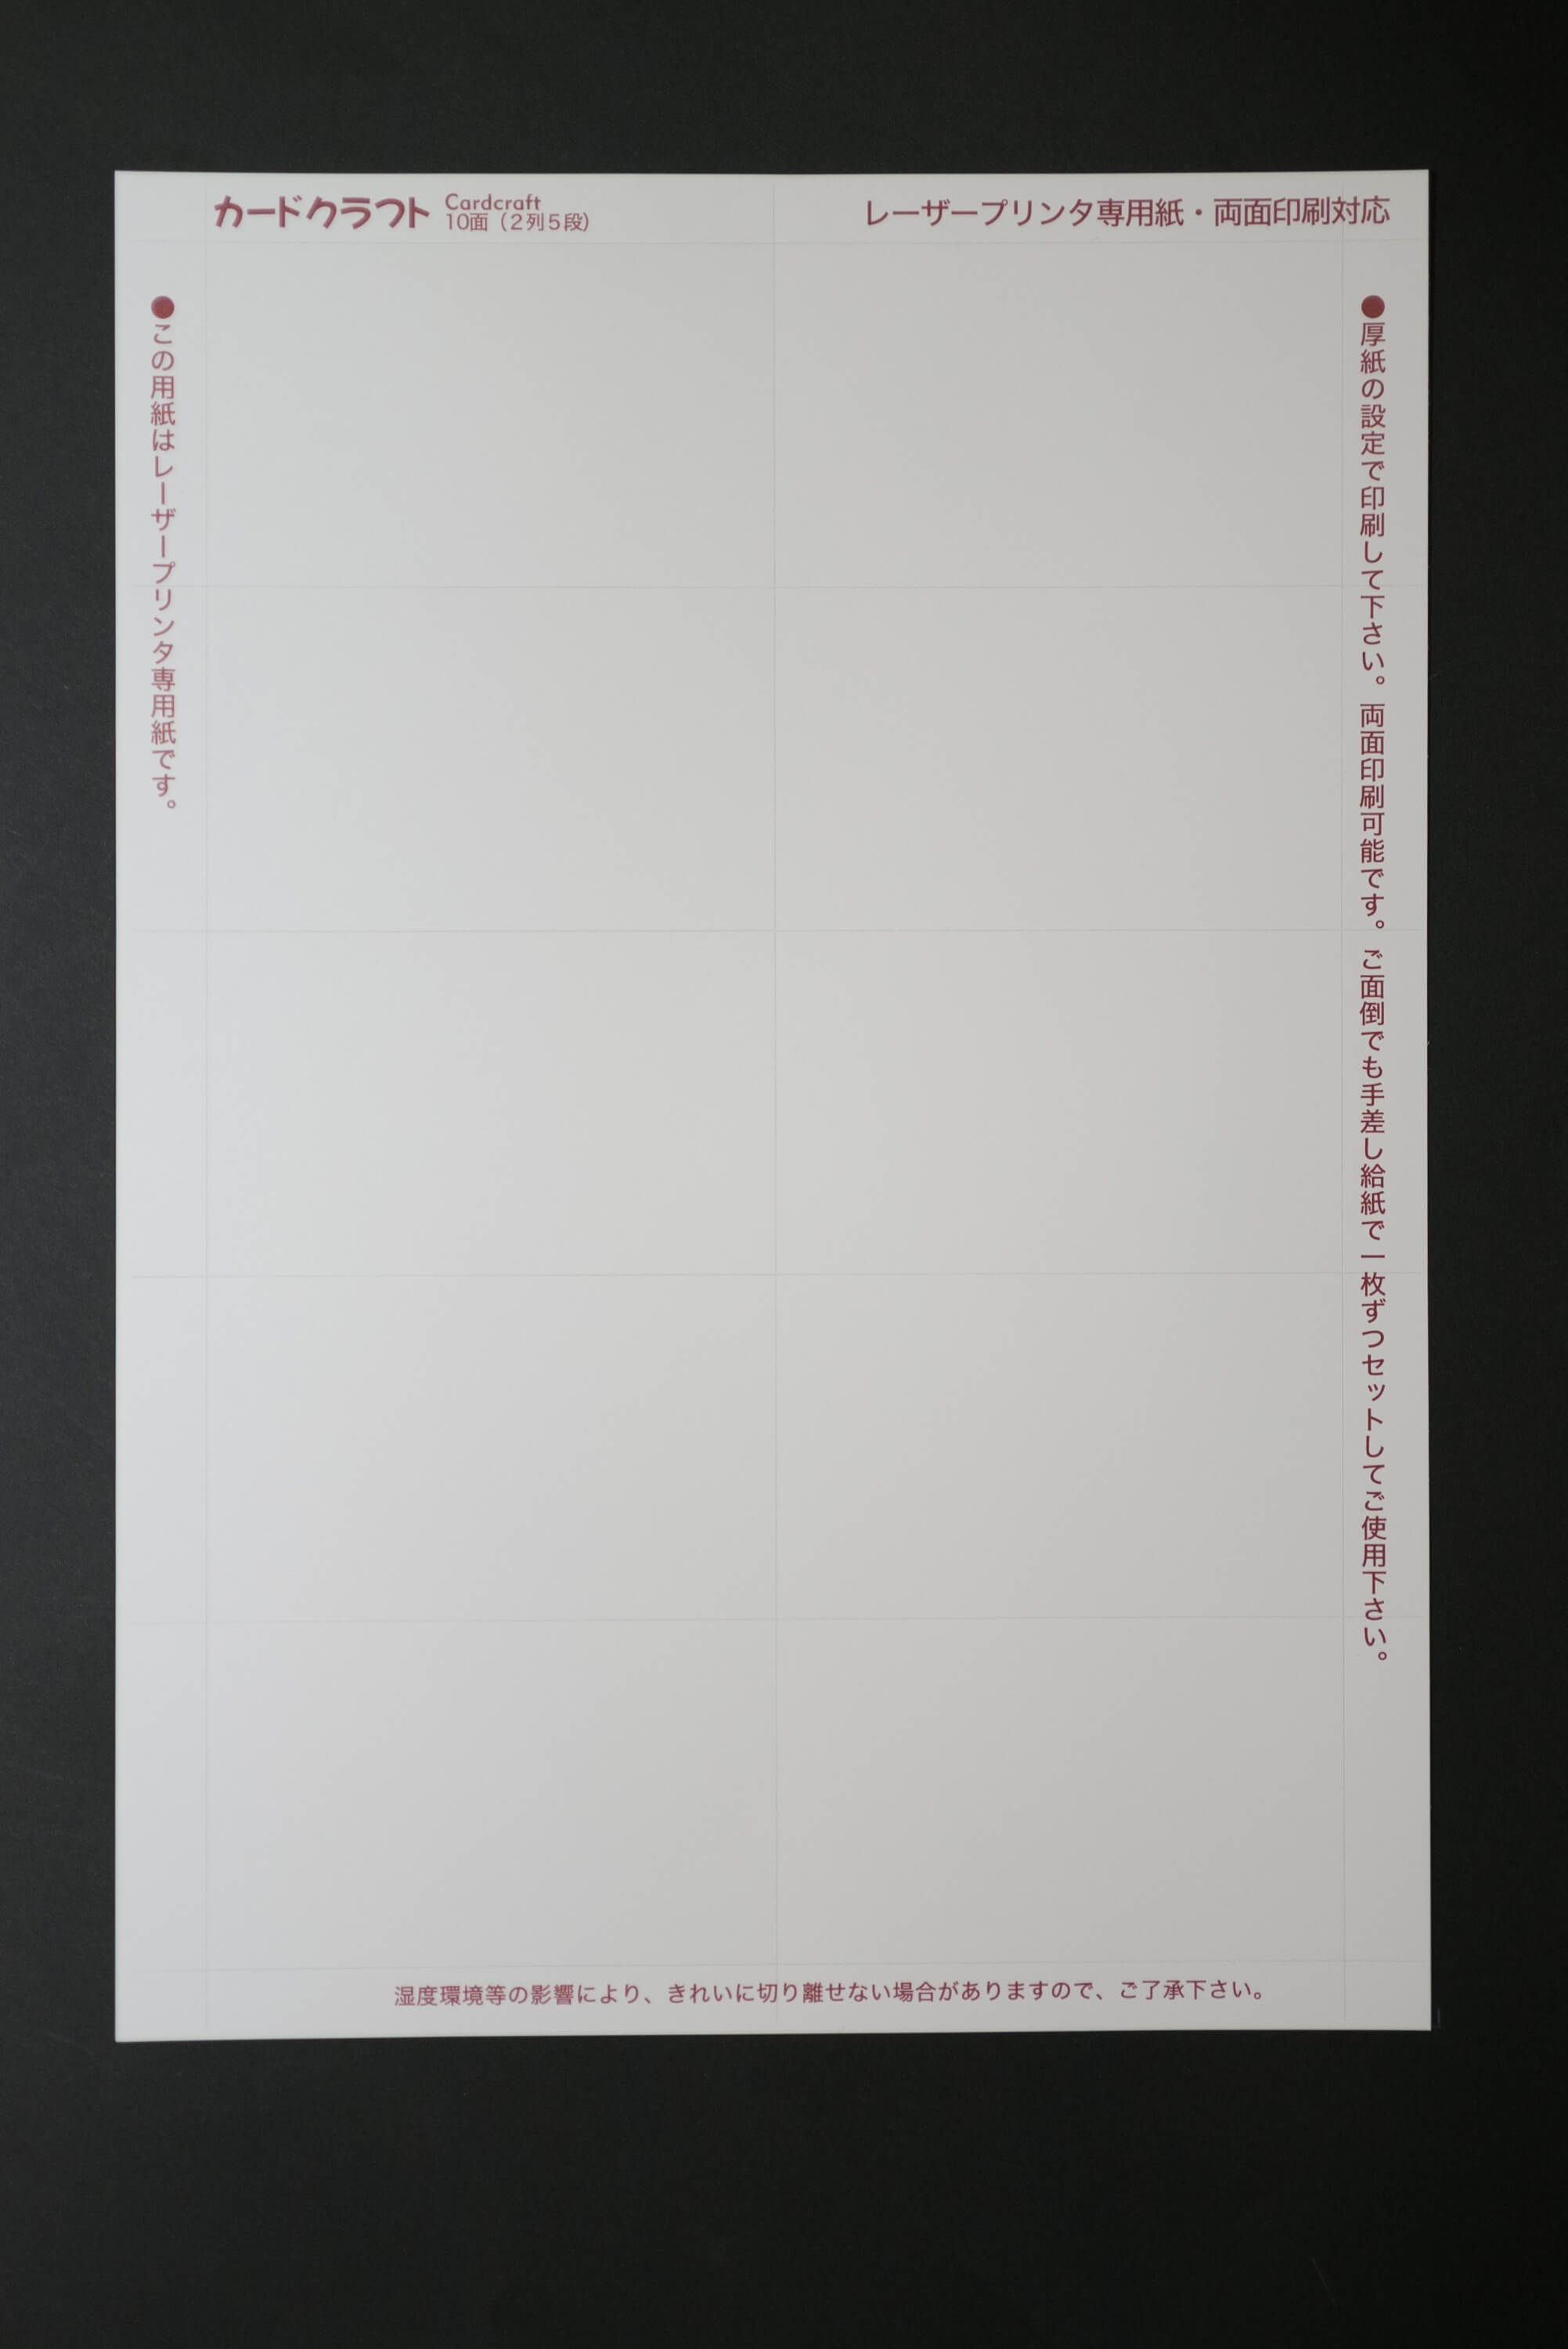 カードクラフト名刺用紙 インクジェットプリンター専用 10面フォーマット画像 ホワイト